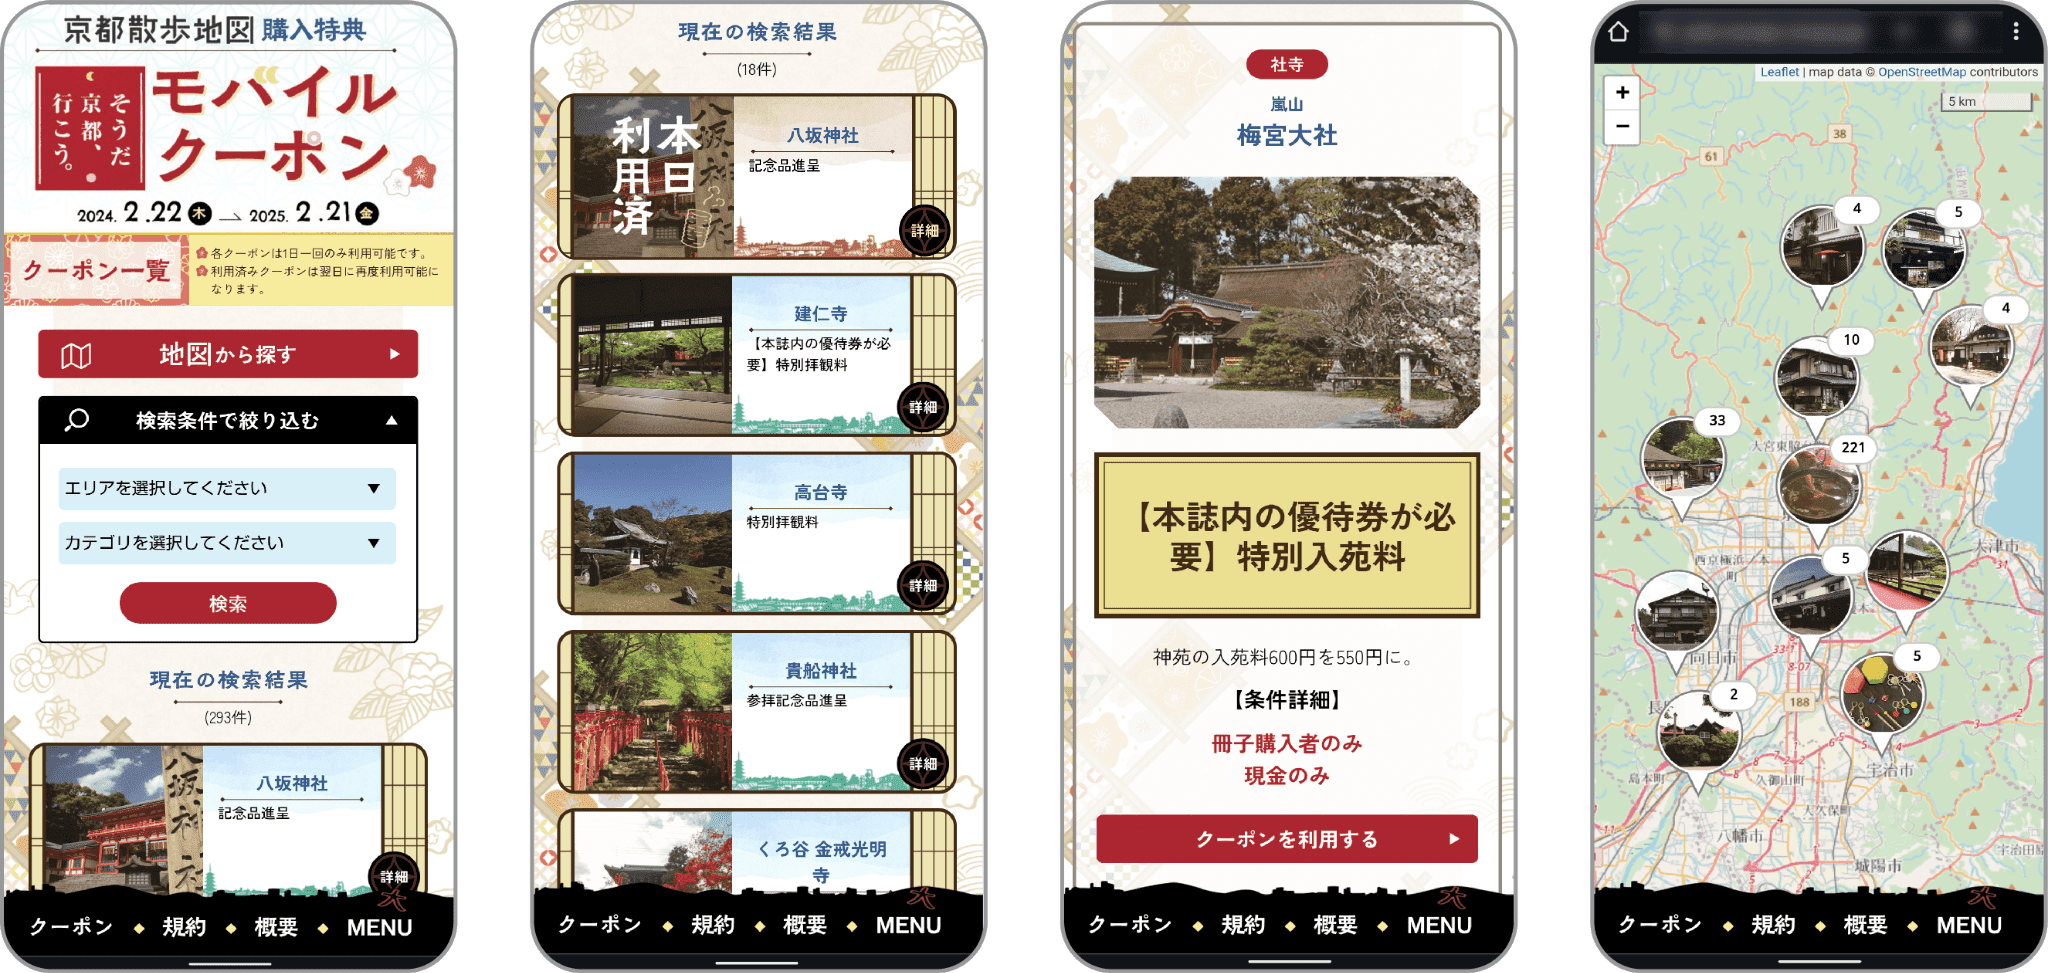 『京都散歩地図』購入特典モバイルクーポンに、PKBソリューションが採用